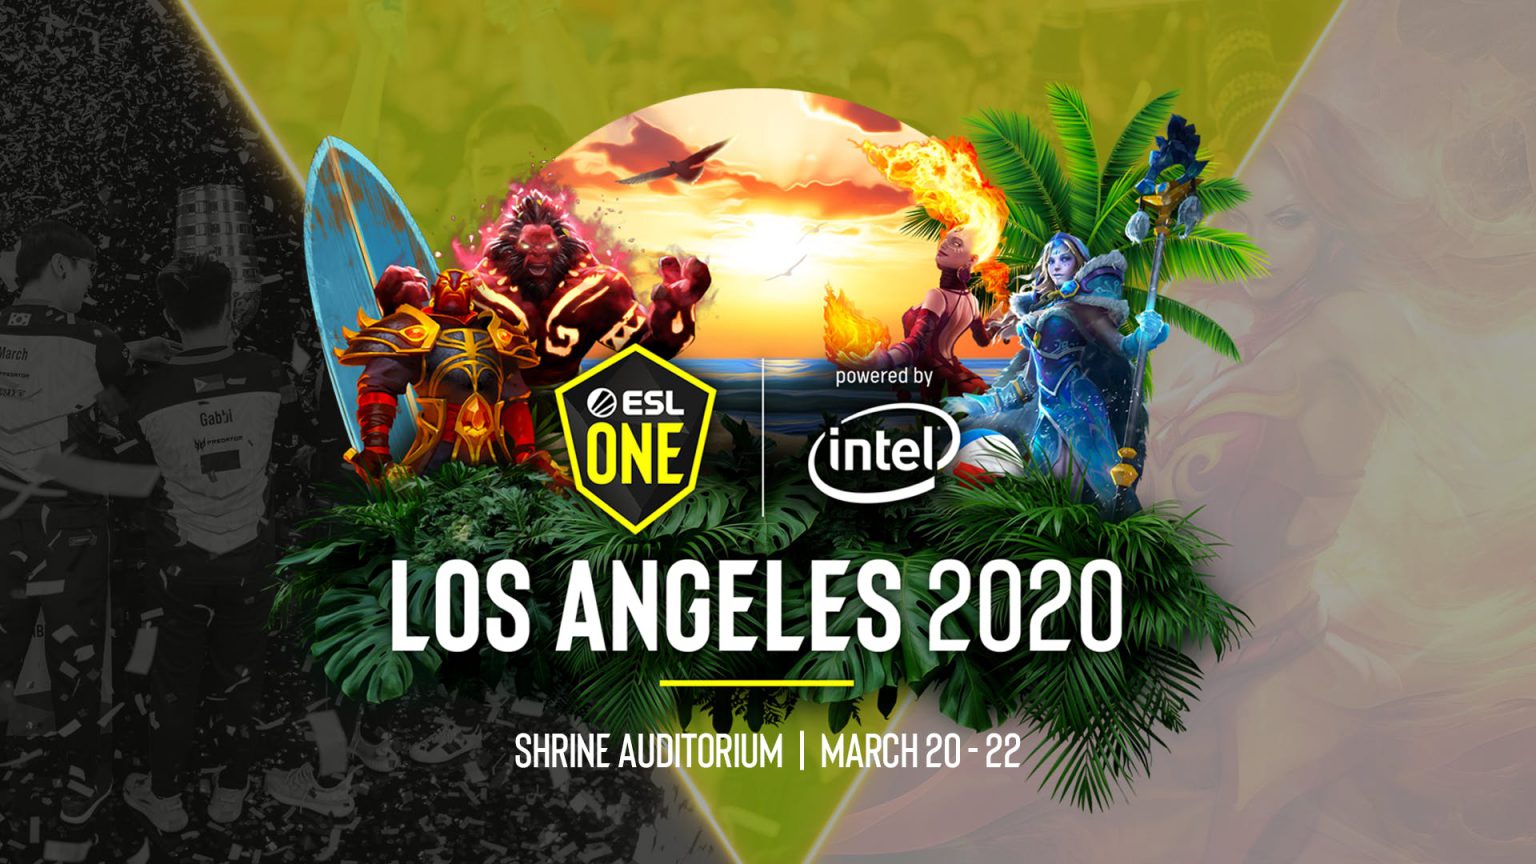 Dota 2: ESL One estréia Major em Los Angeles em 2020